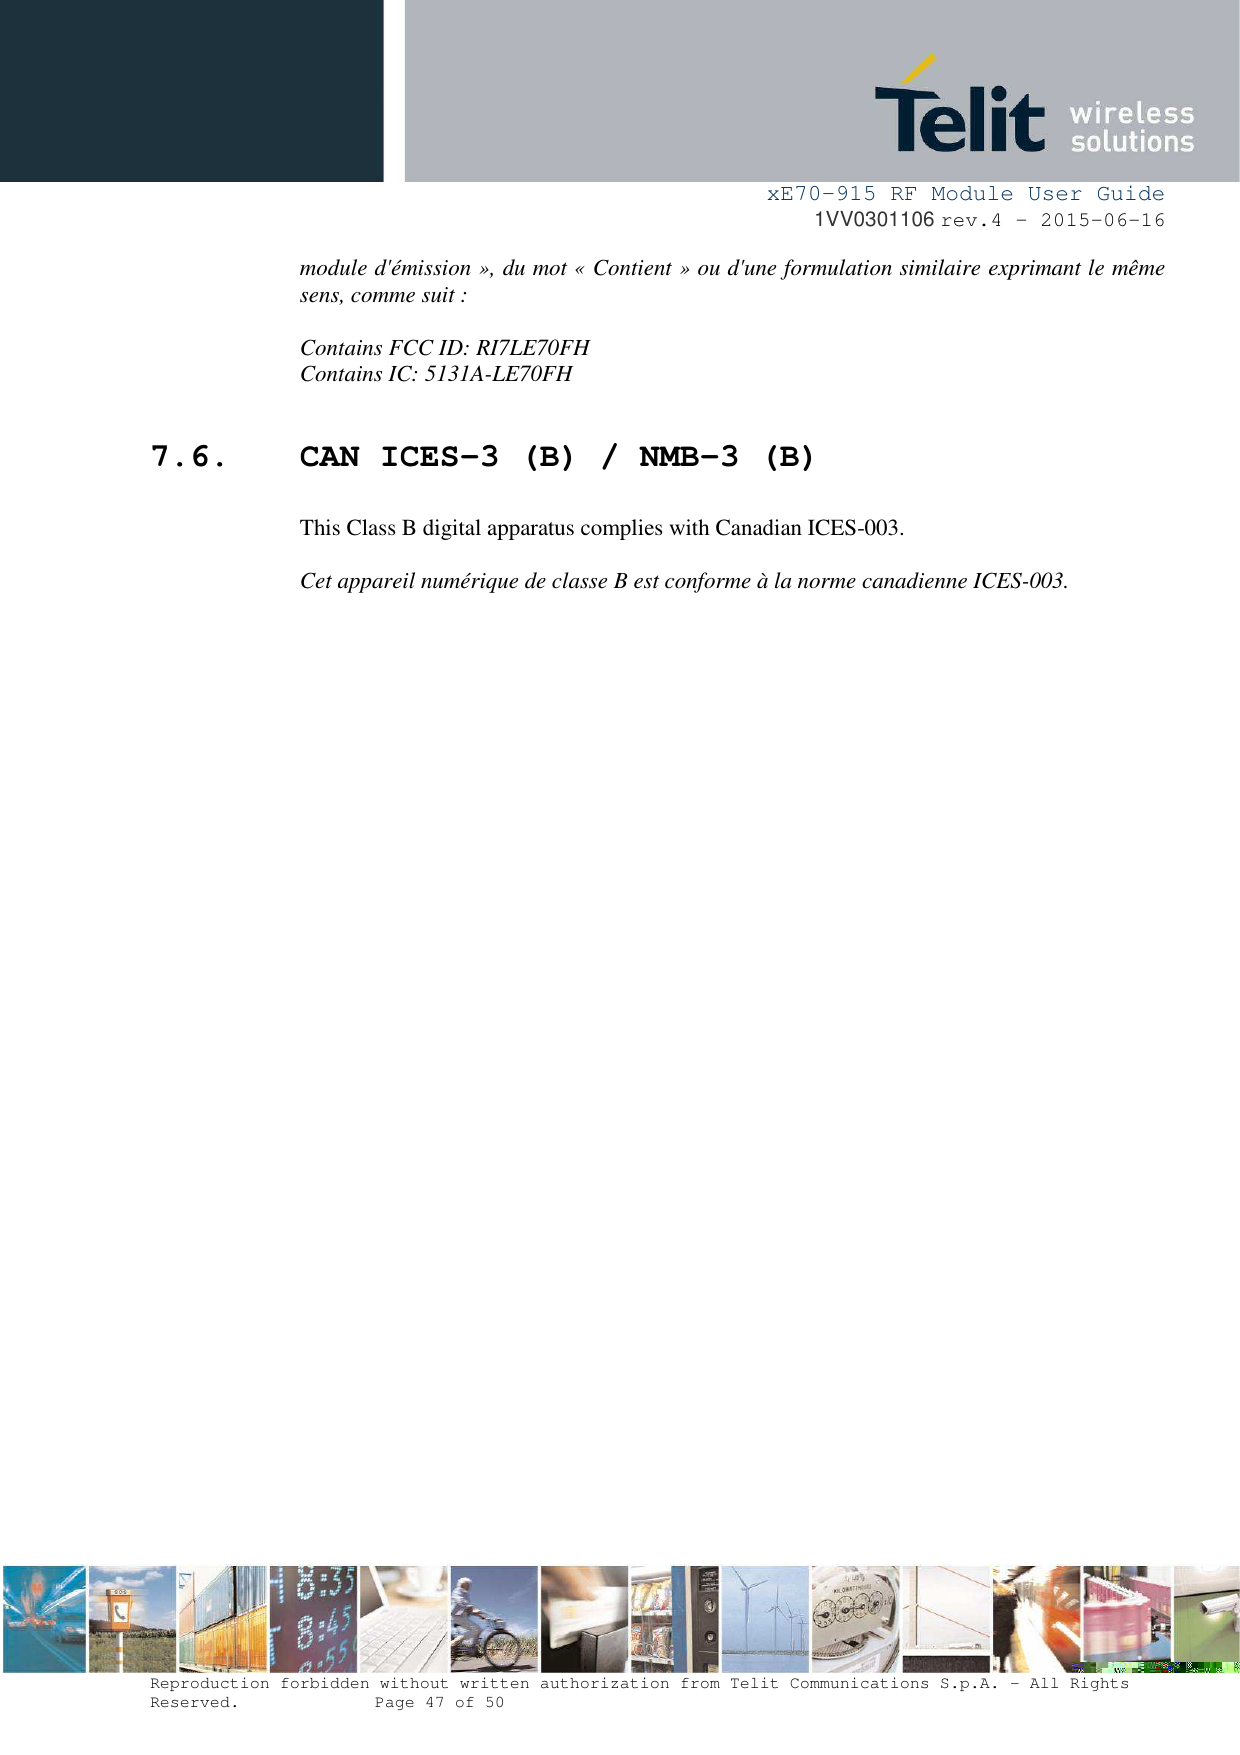 xE70-915 RF Module User Guide 1VV0301106 rev.4 – 2015-06-16 Reproduction forbidden without written authorization from Telit Communications S.p.A. - All Rights Reserved.    Page 47 of 50 module d&apos;émission », du mot « Contient » ou d&apos;une formulation similaire exprimant le même sens, comme suit : Contains FCC ID: RI7LE70FH Contains IC: 5131A-LE70FH 7.6. CAN ICES-3 (B) / NMB-3 (B) This Class B digital apparatus complies with Canadian ICES-003. Cet appareil numérique de classe B est conforme à la norme canadienne ICES-003. 